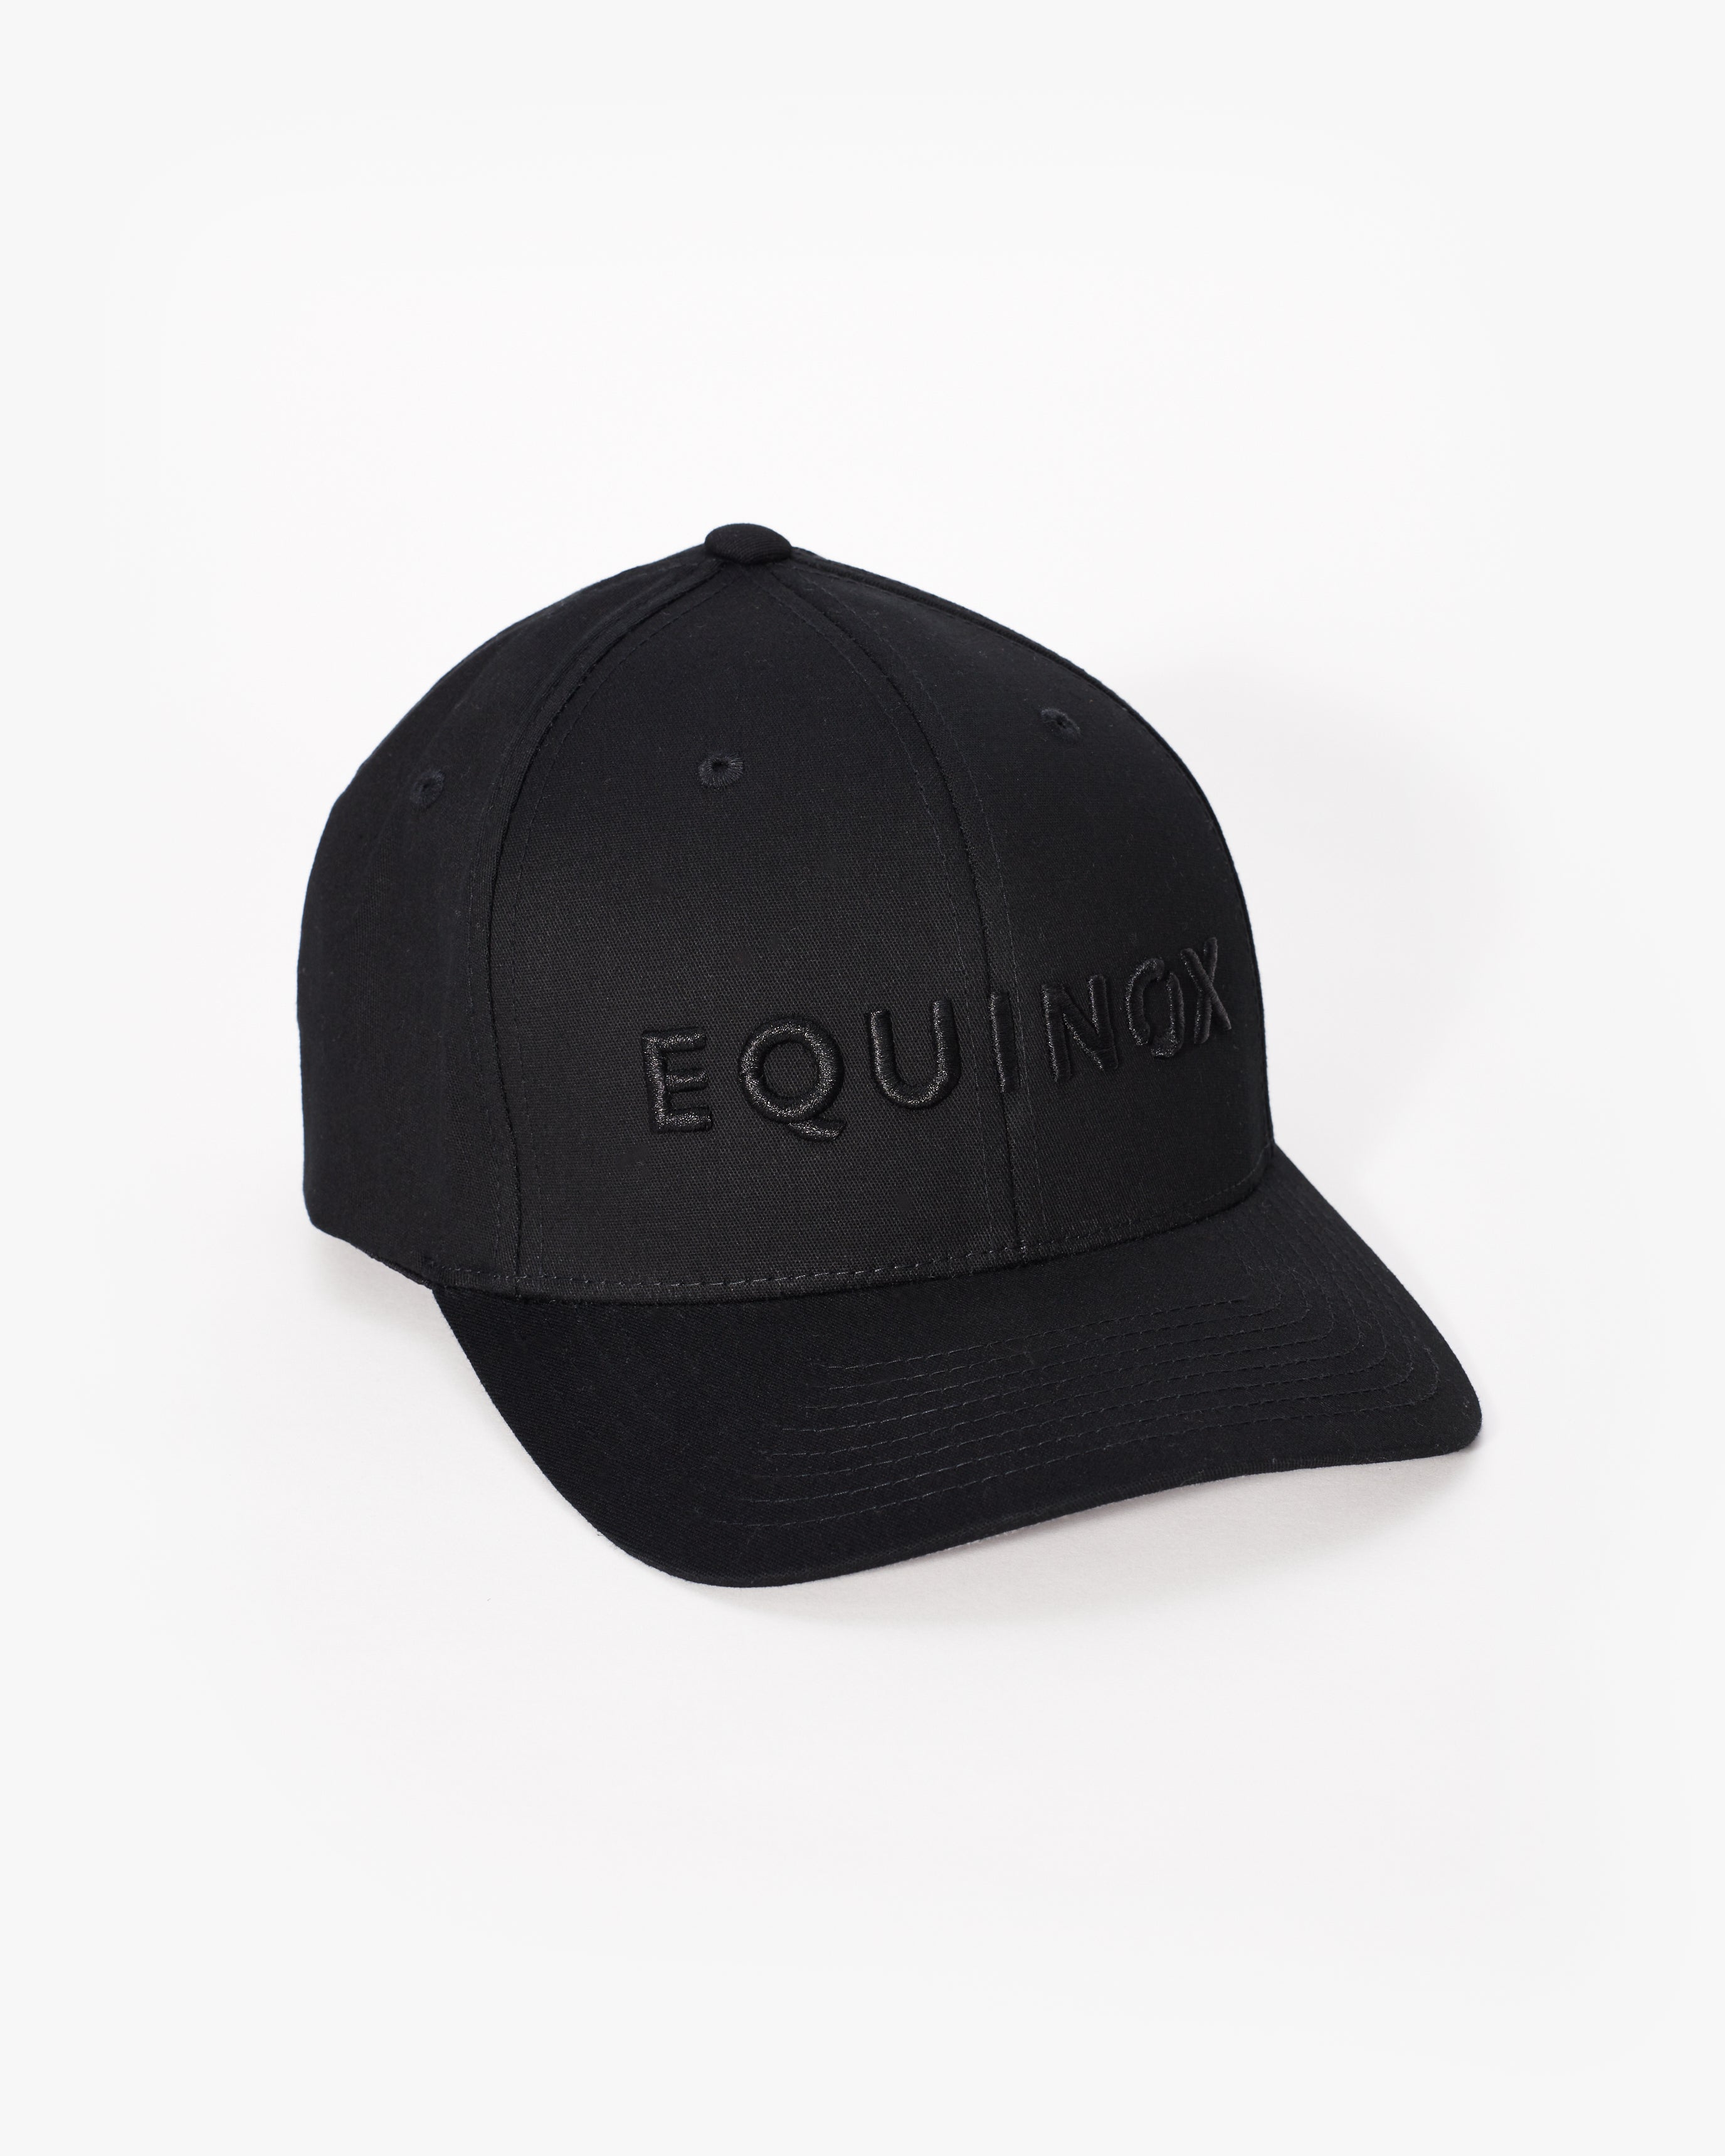 – Shop Equinox Flex Hat at The Fit Equinox